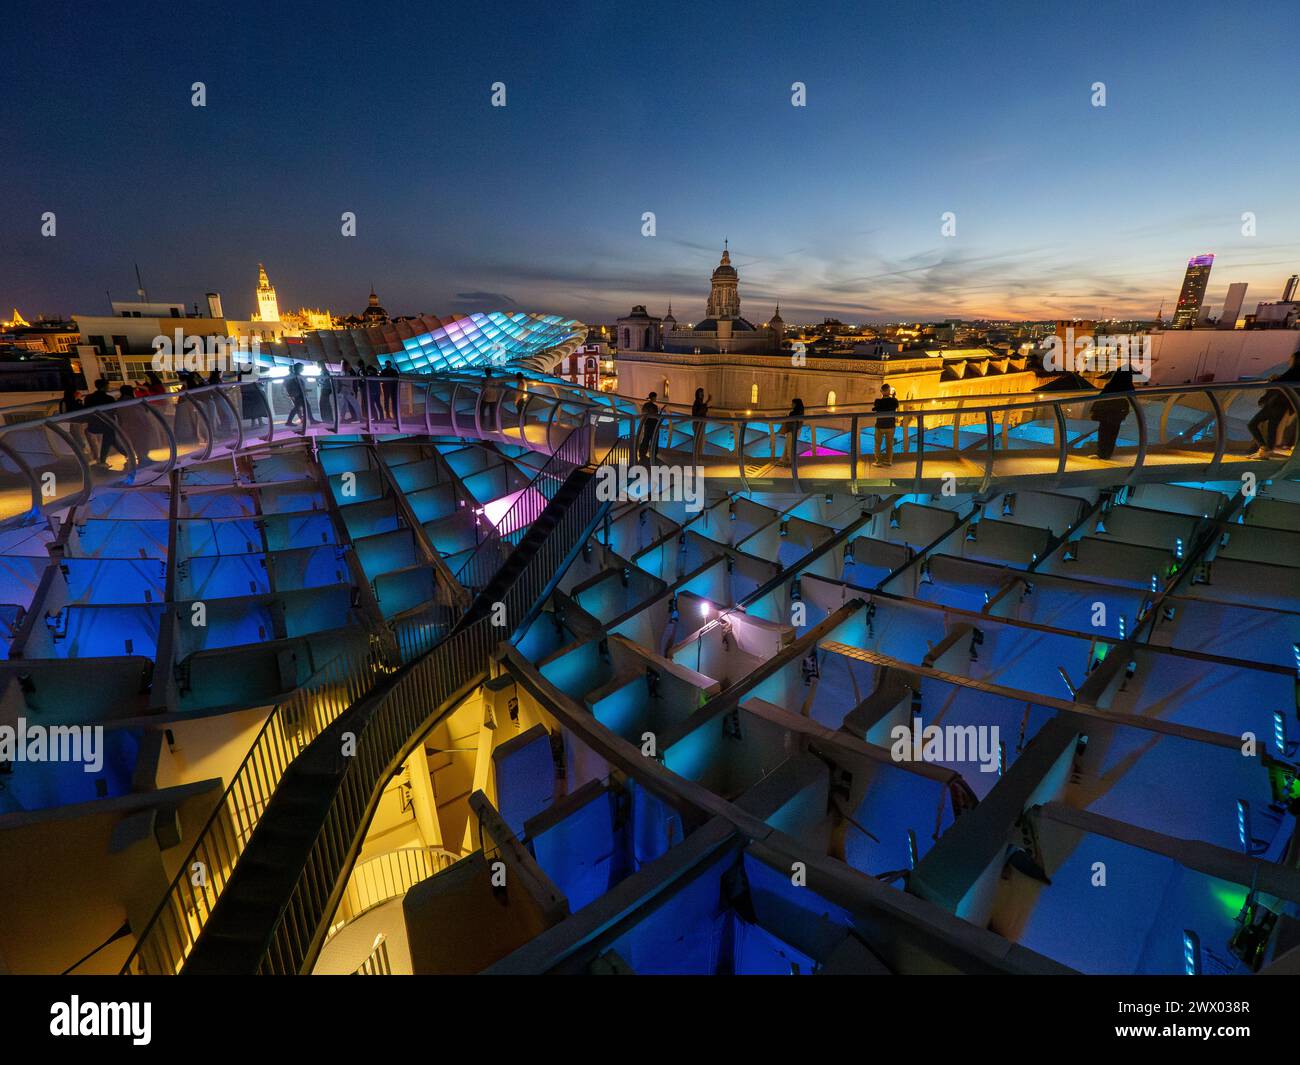 Setas de Sevilla, de nuit. Las Setas, Metropol Parasol, grande structure principalement en bois située sur la place la Encarnación à Séville, Espagne. Banque D'Images